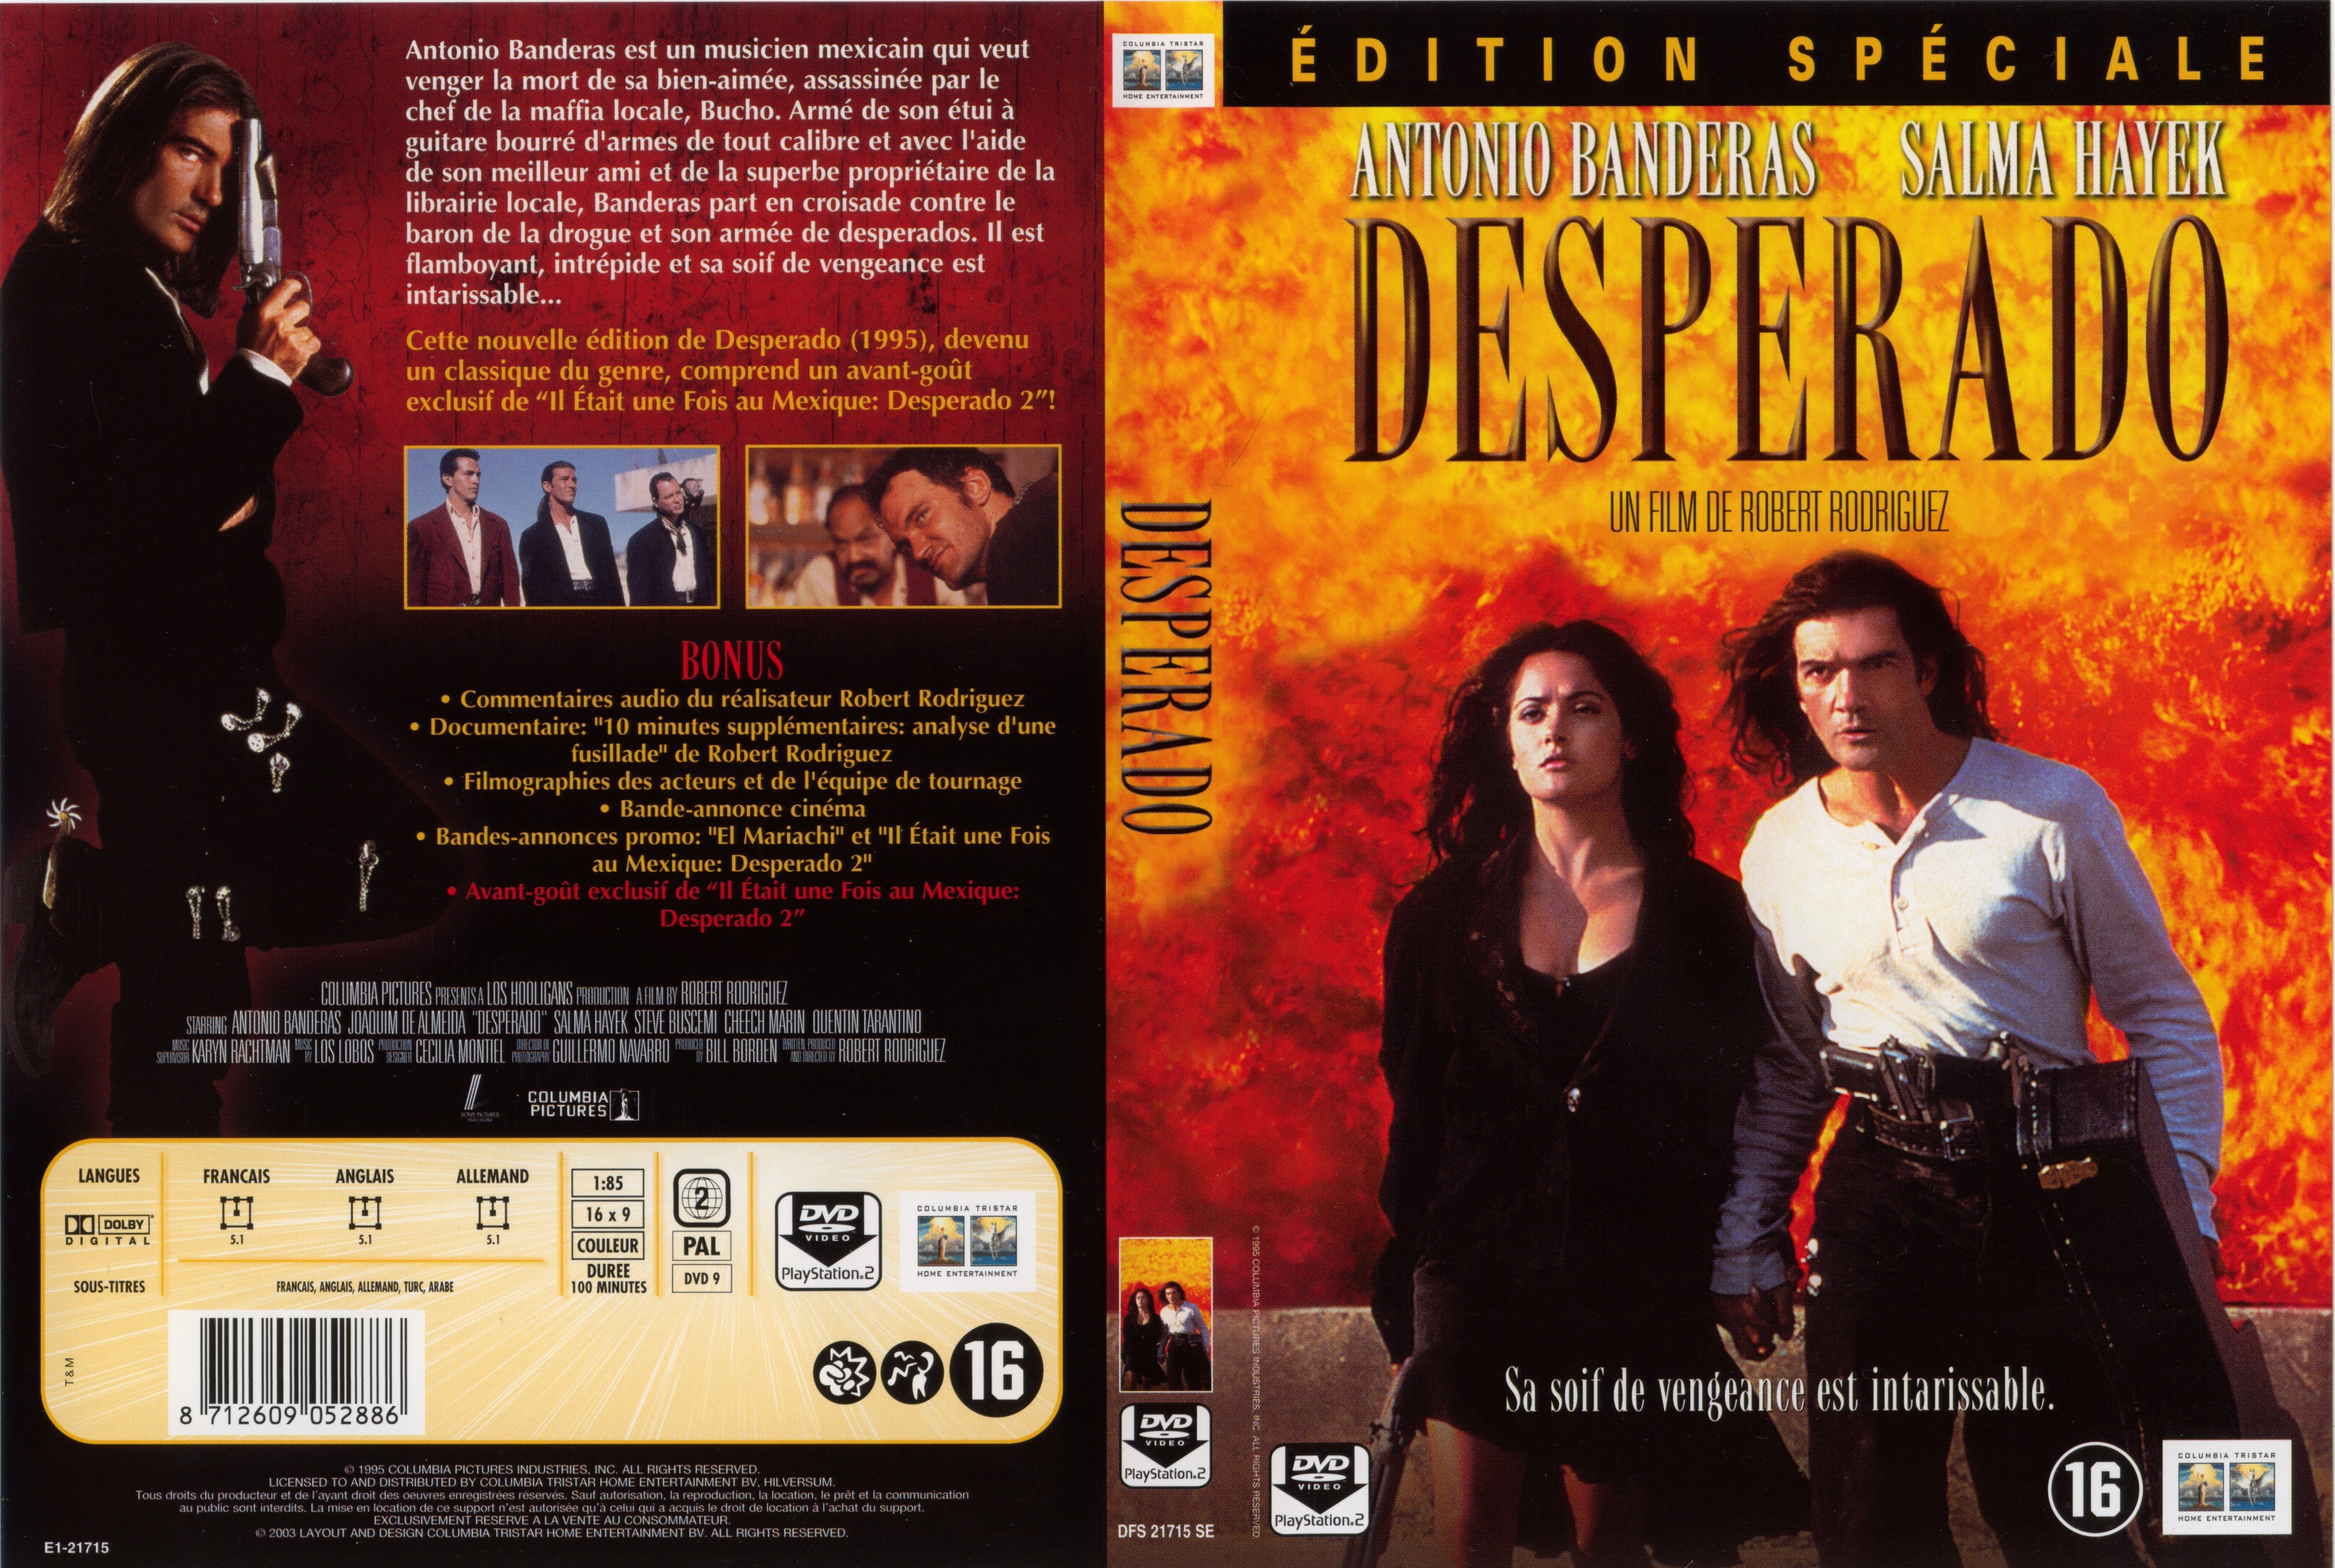 Jaquette DVD Desperado v2